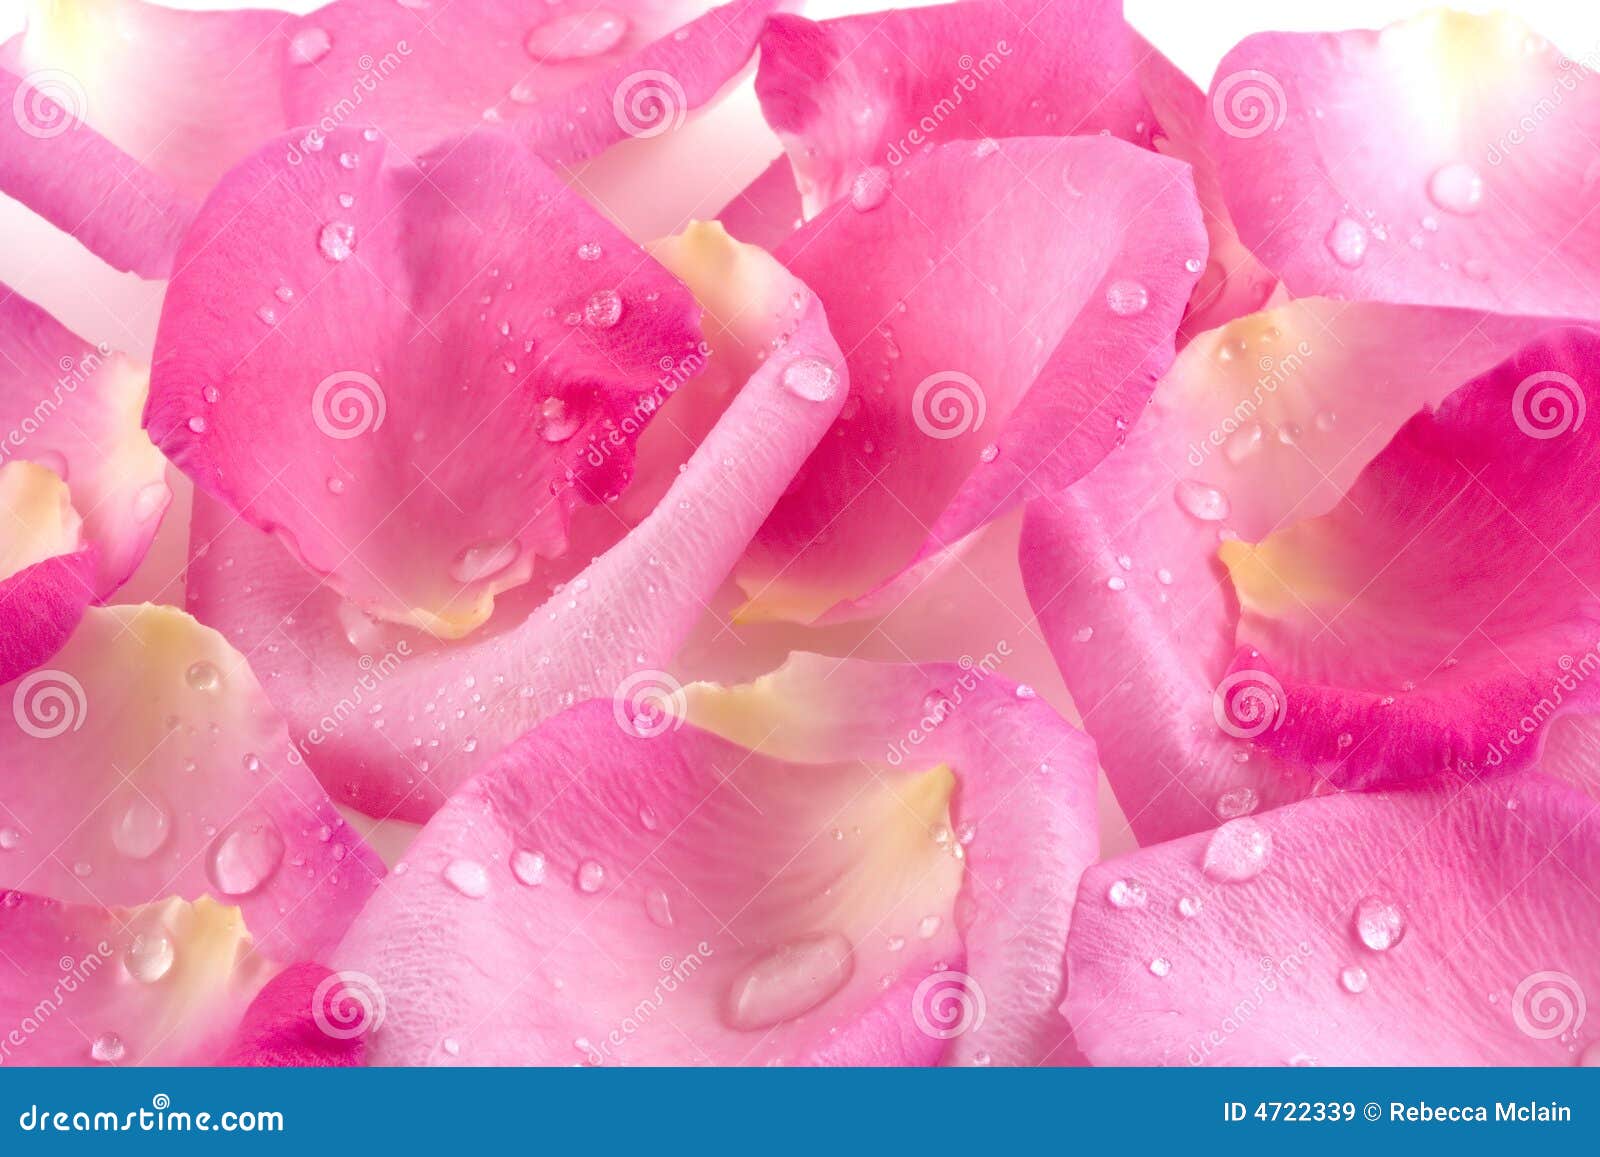 dew drops on rose petals